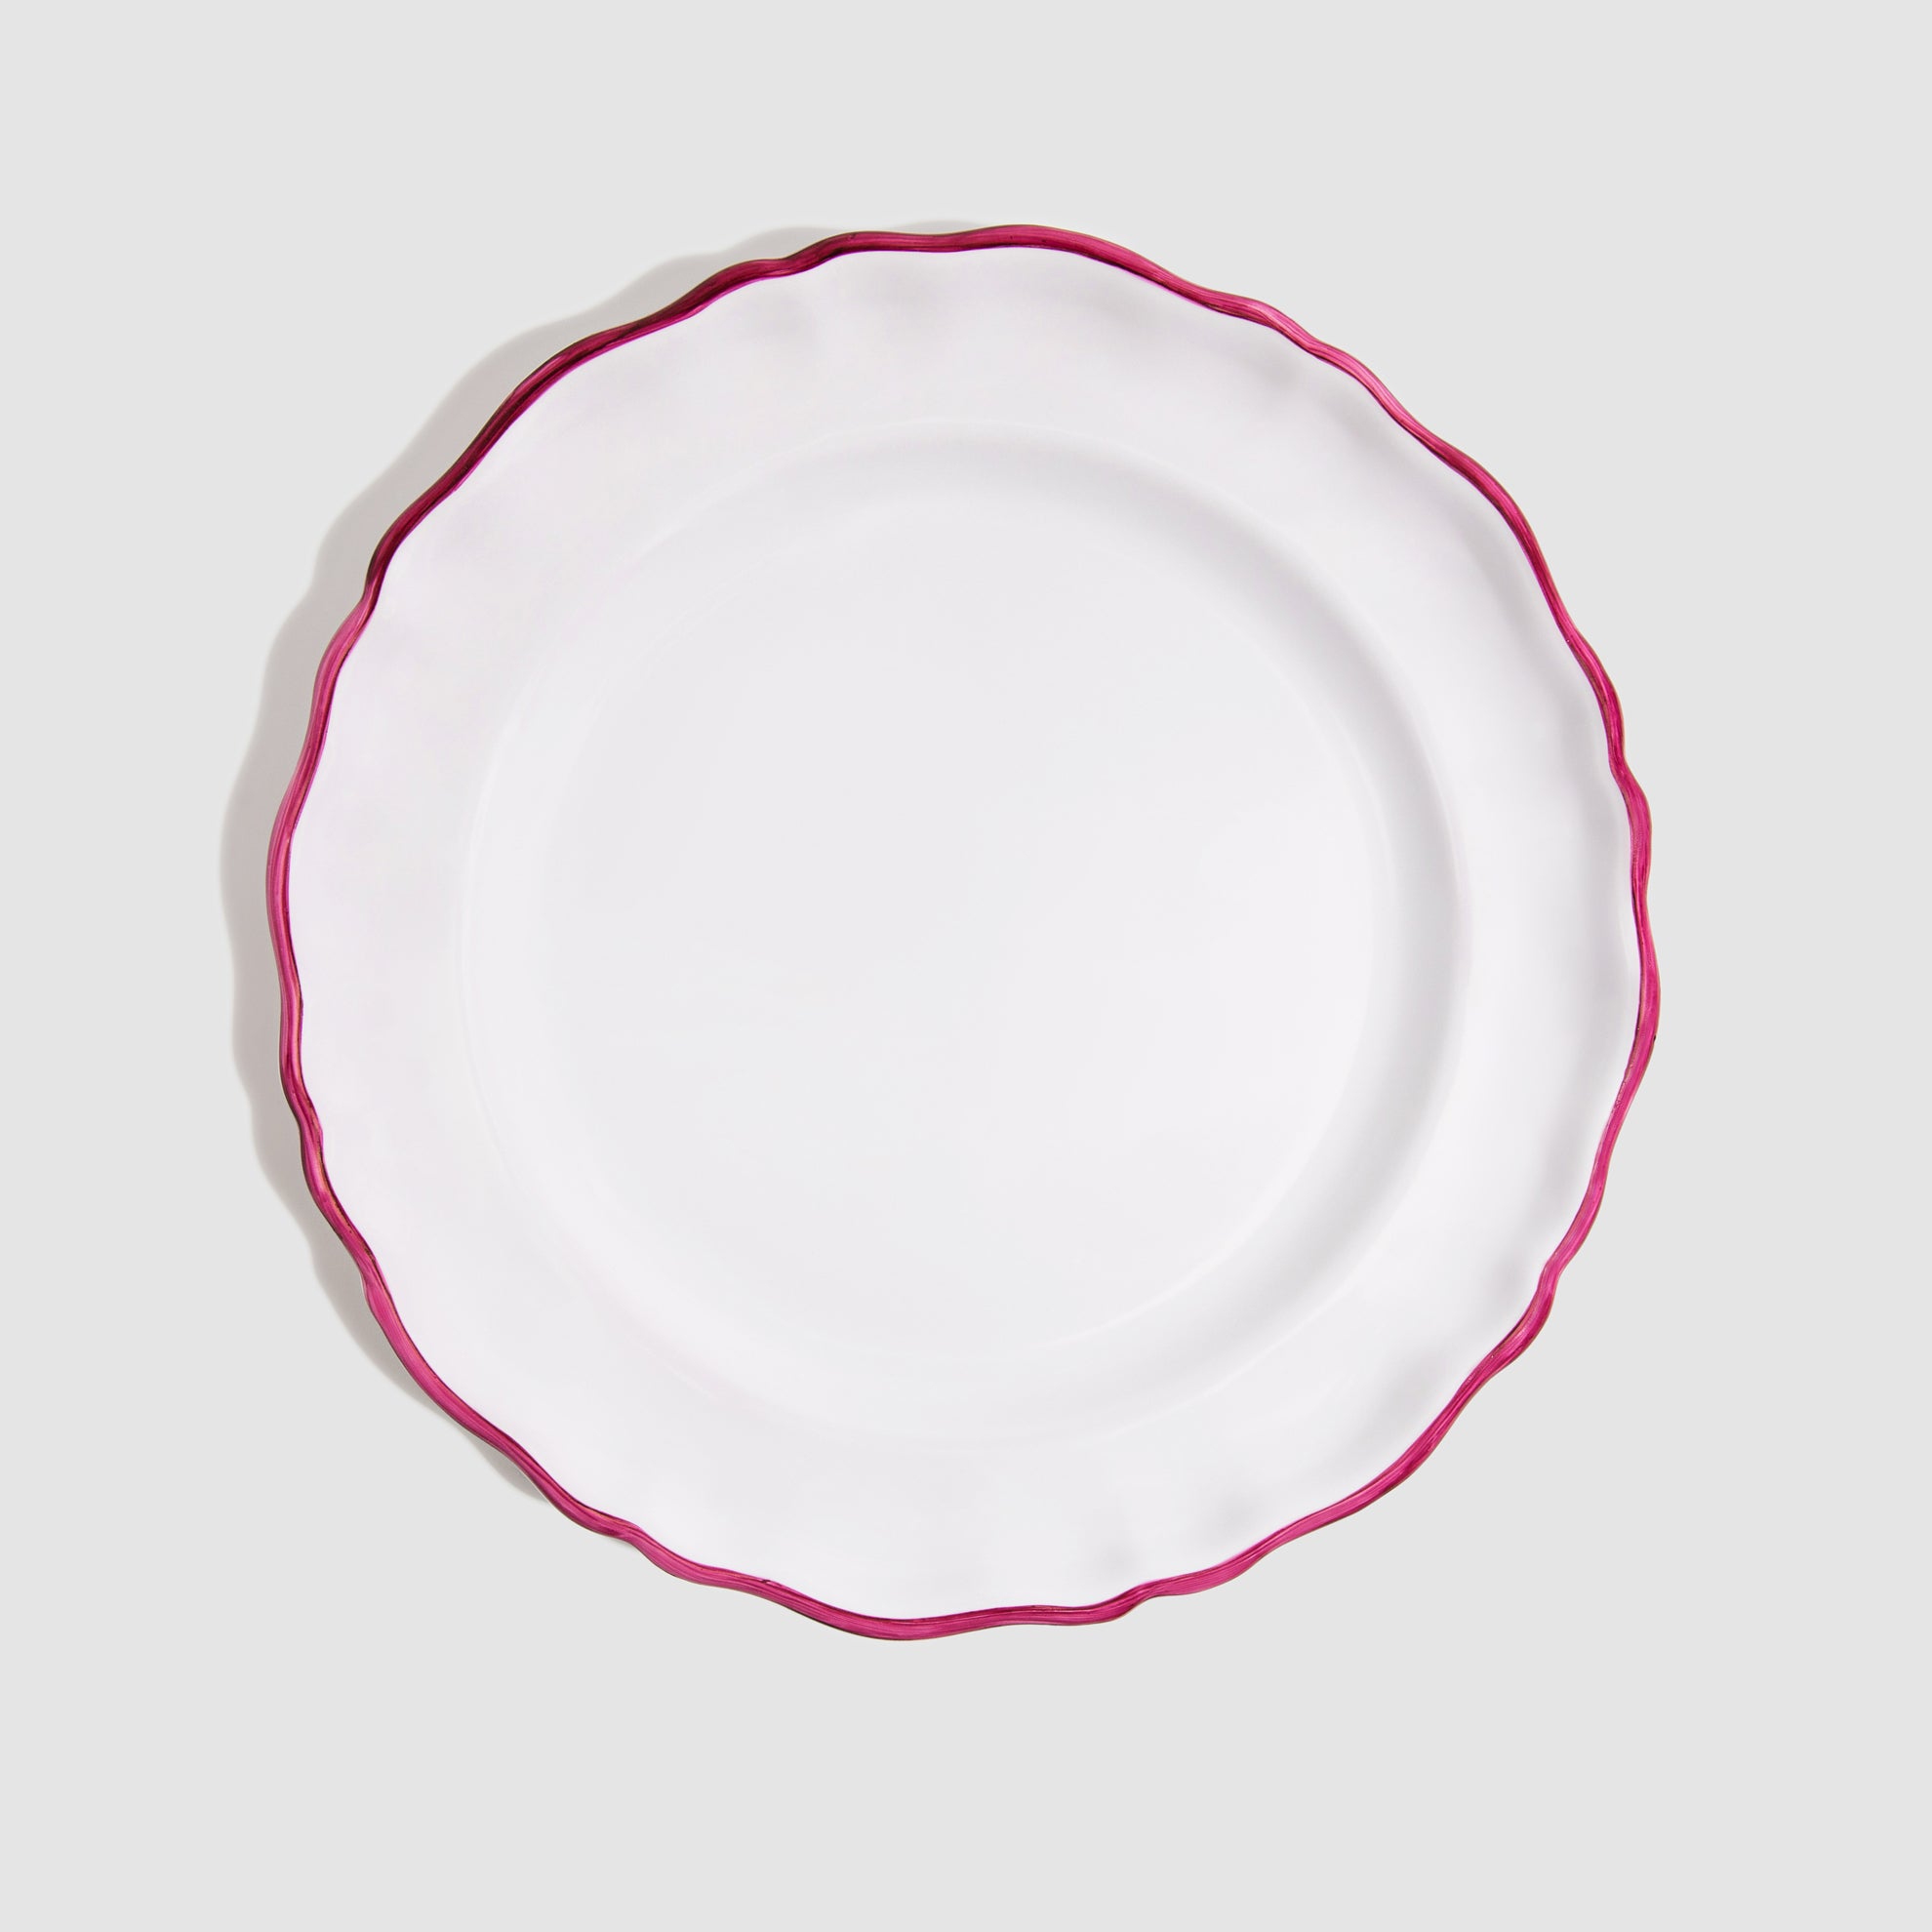 L'Horizon II Dinner Plate, Framboise